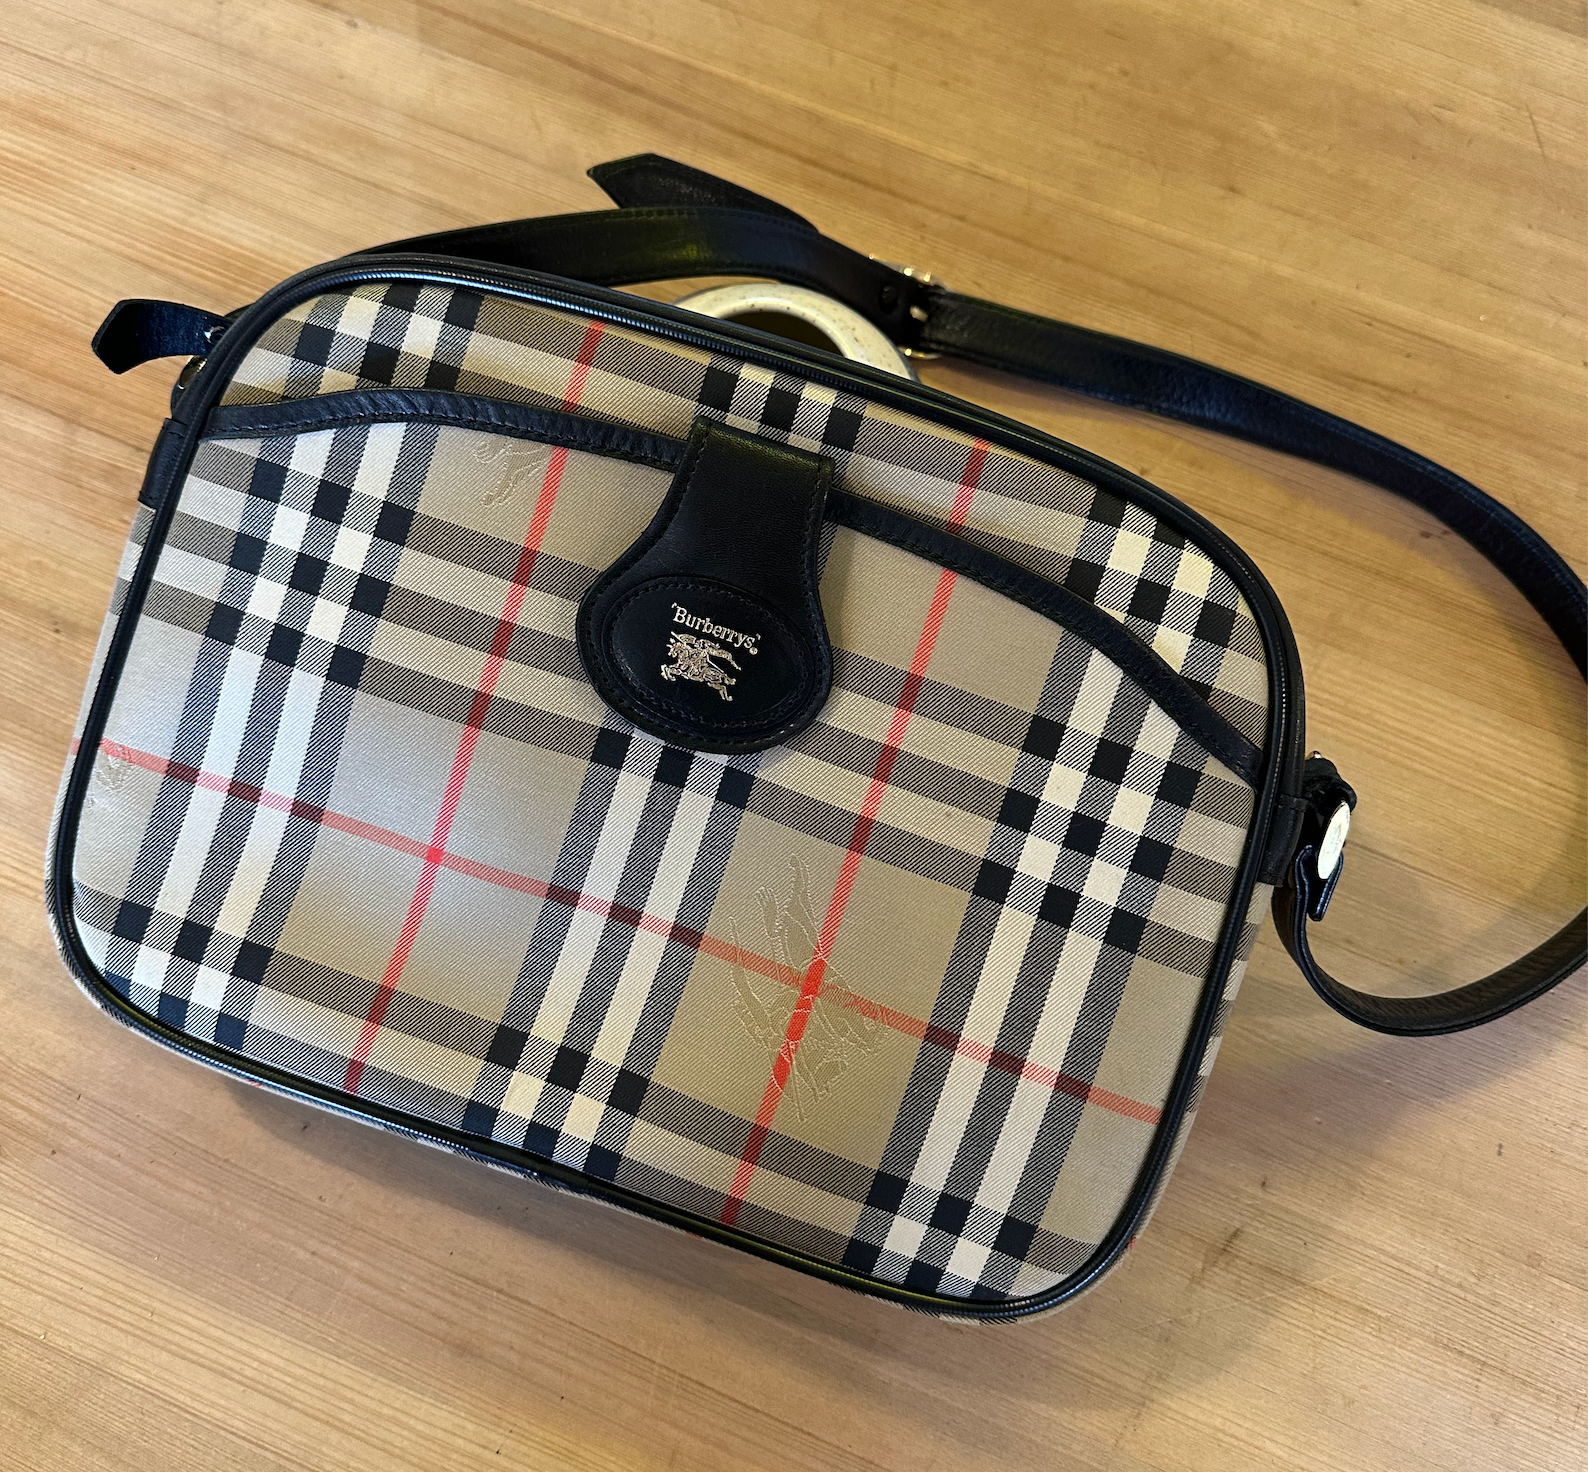 Burberry Sling Vintage Check Shoulder Bag